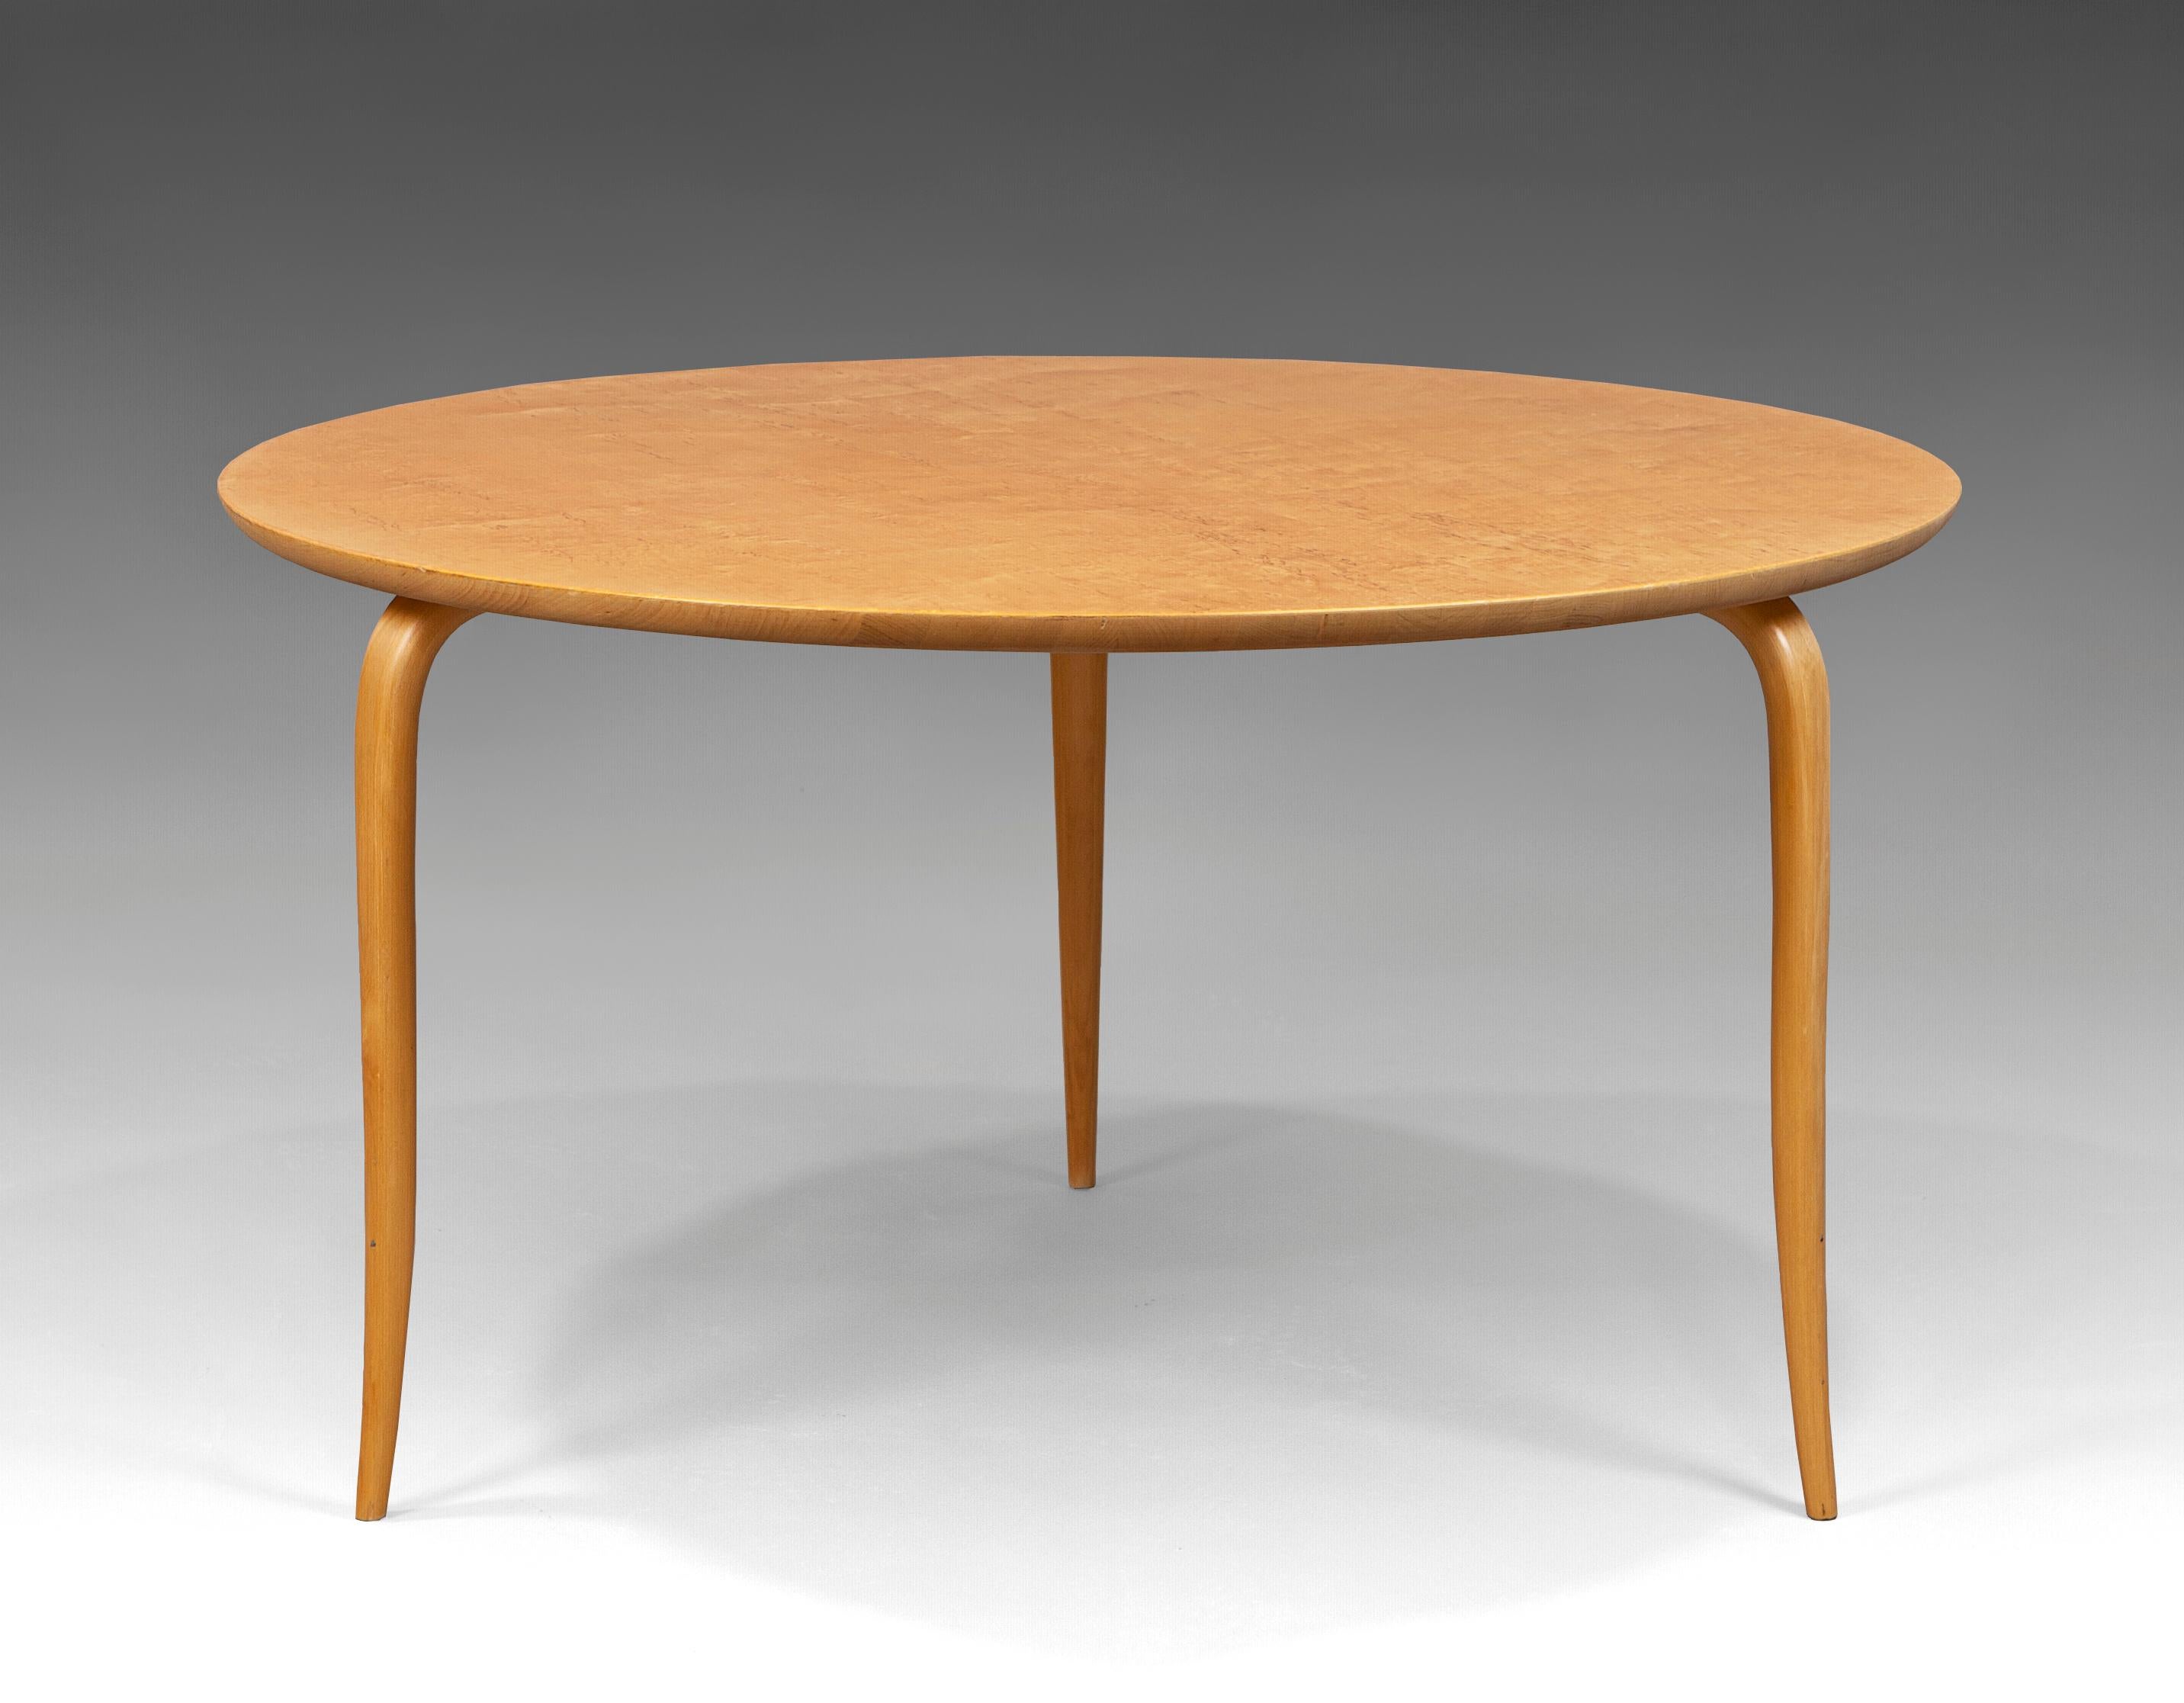 Tisch „Annika“ von Bruno Mathsson für Karl Mathsson, Schweden, Ende der 60er-Jahre (dated 1969)
Beine aus Birke und Platte aus karelianischer Birke.
 